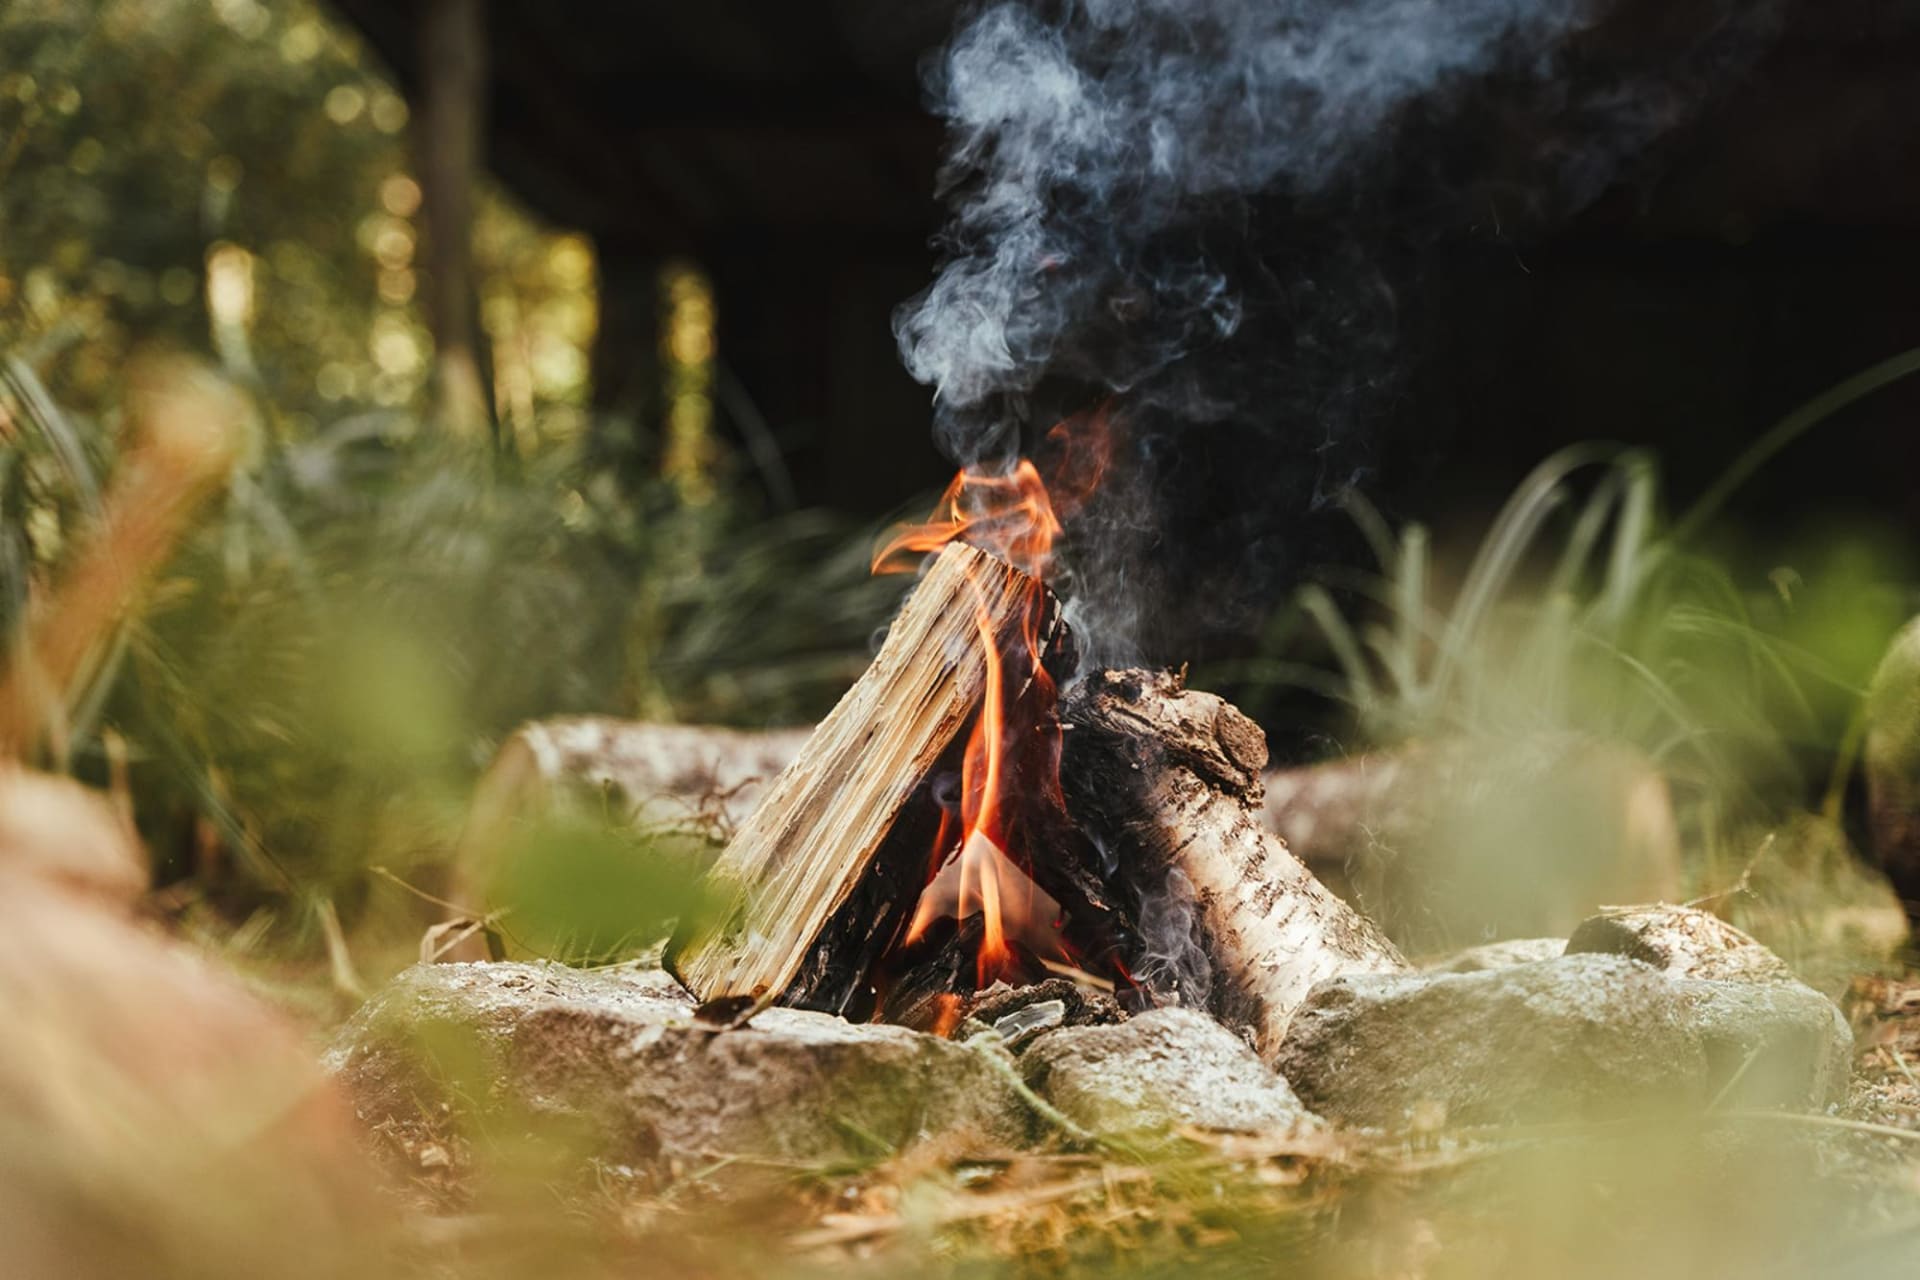 Campfire classics